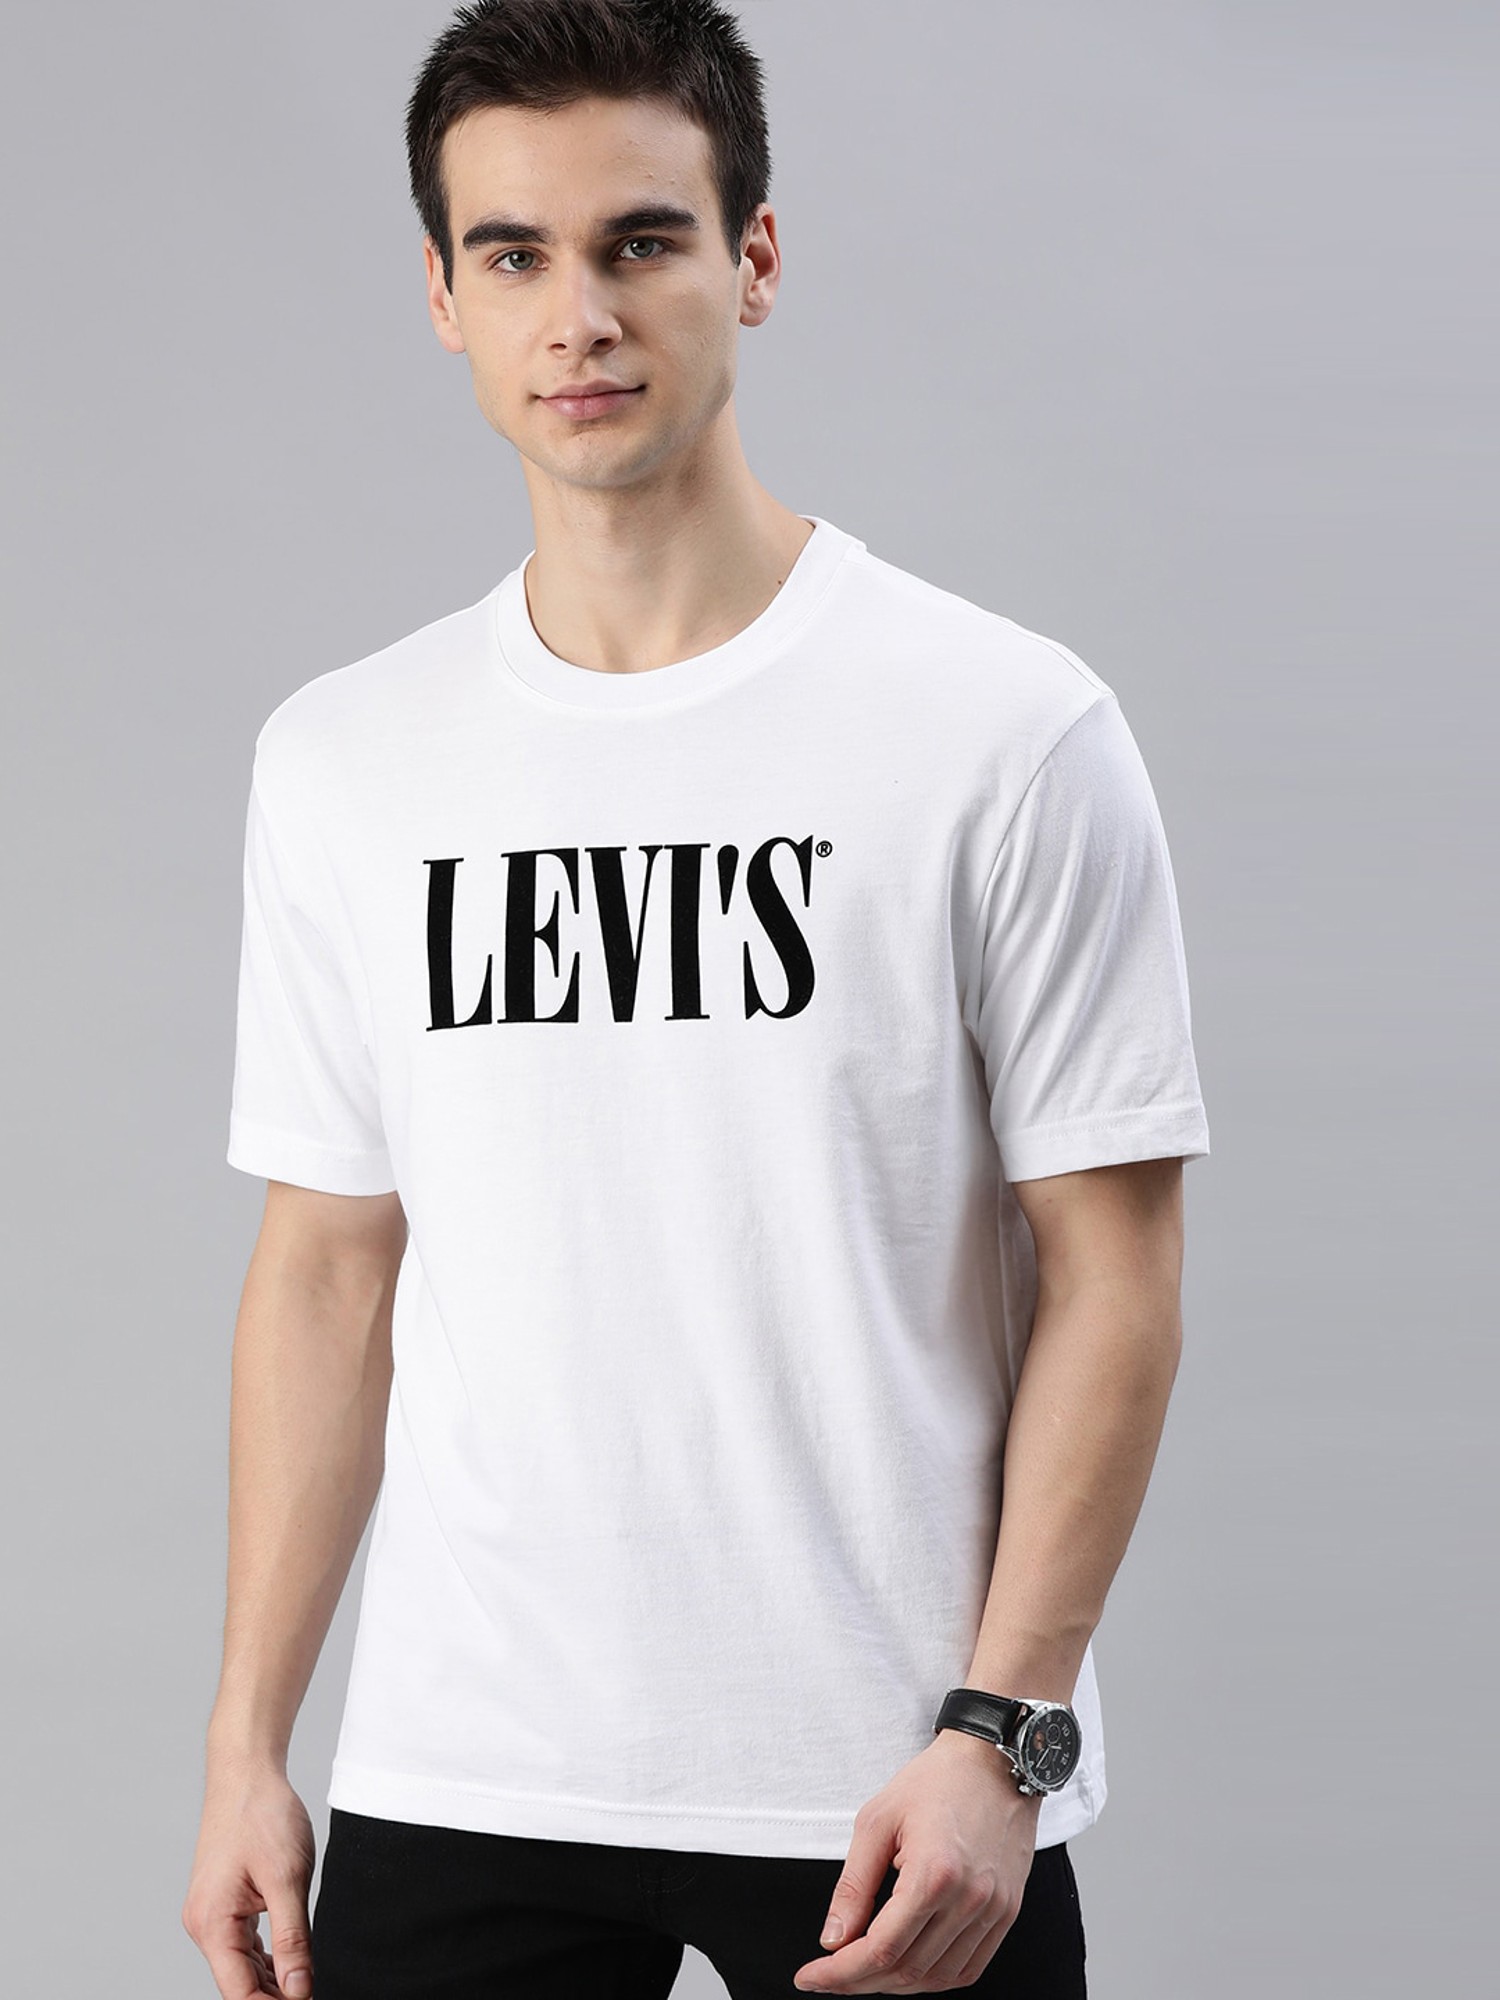 Buy Levi'S White T-Shirt for Mens Online @ Tata CLiQ